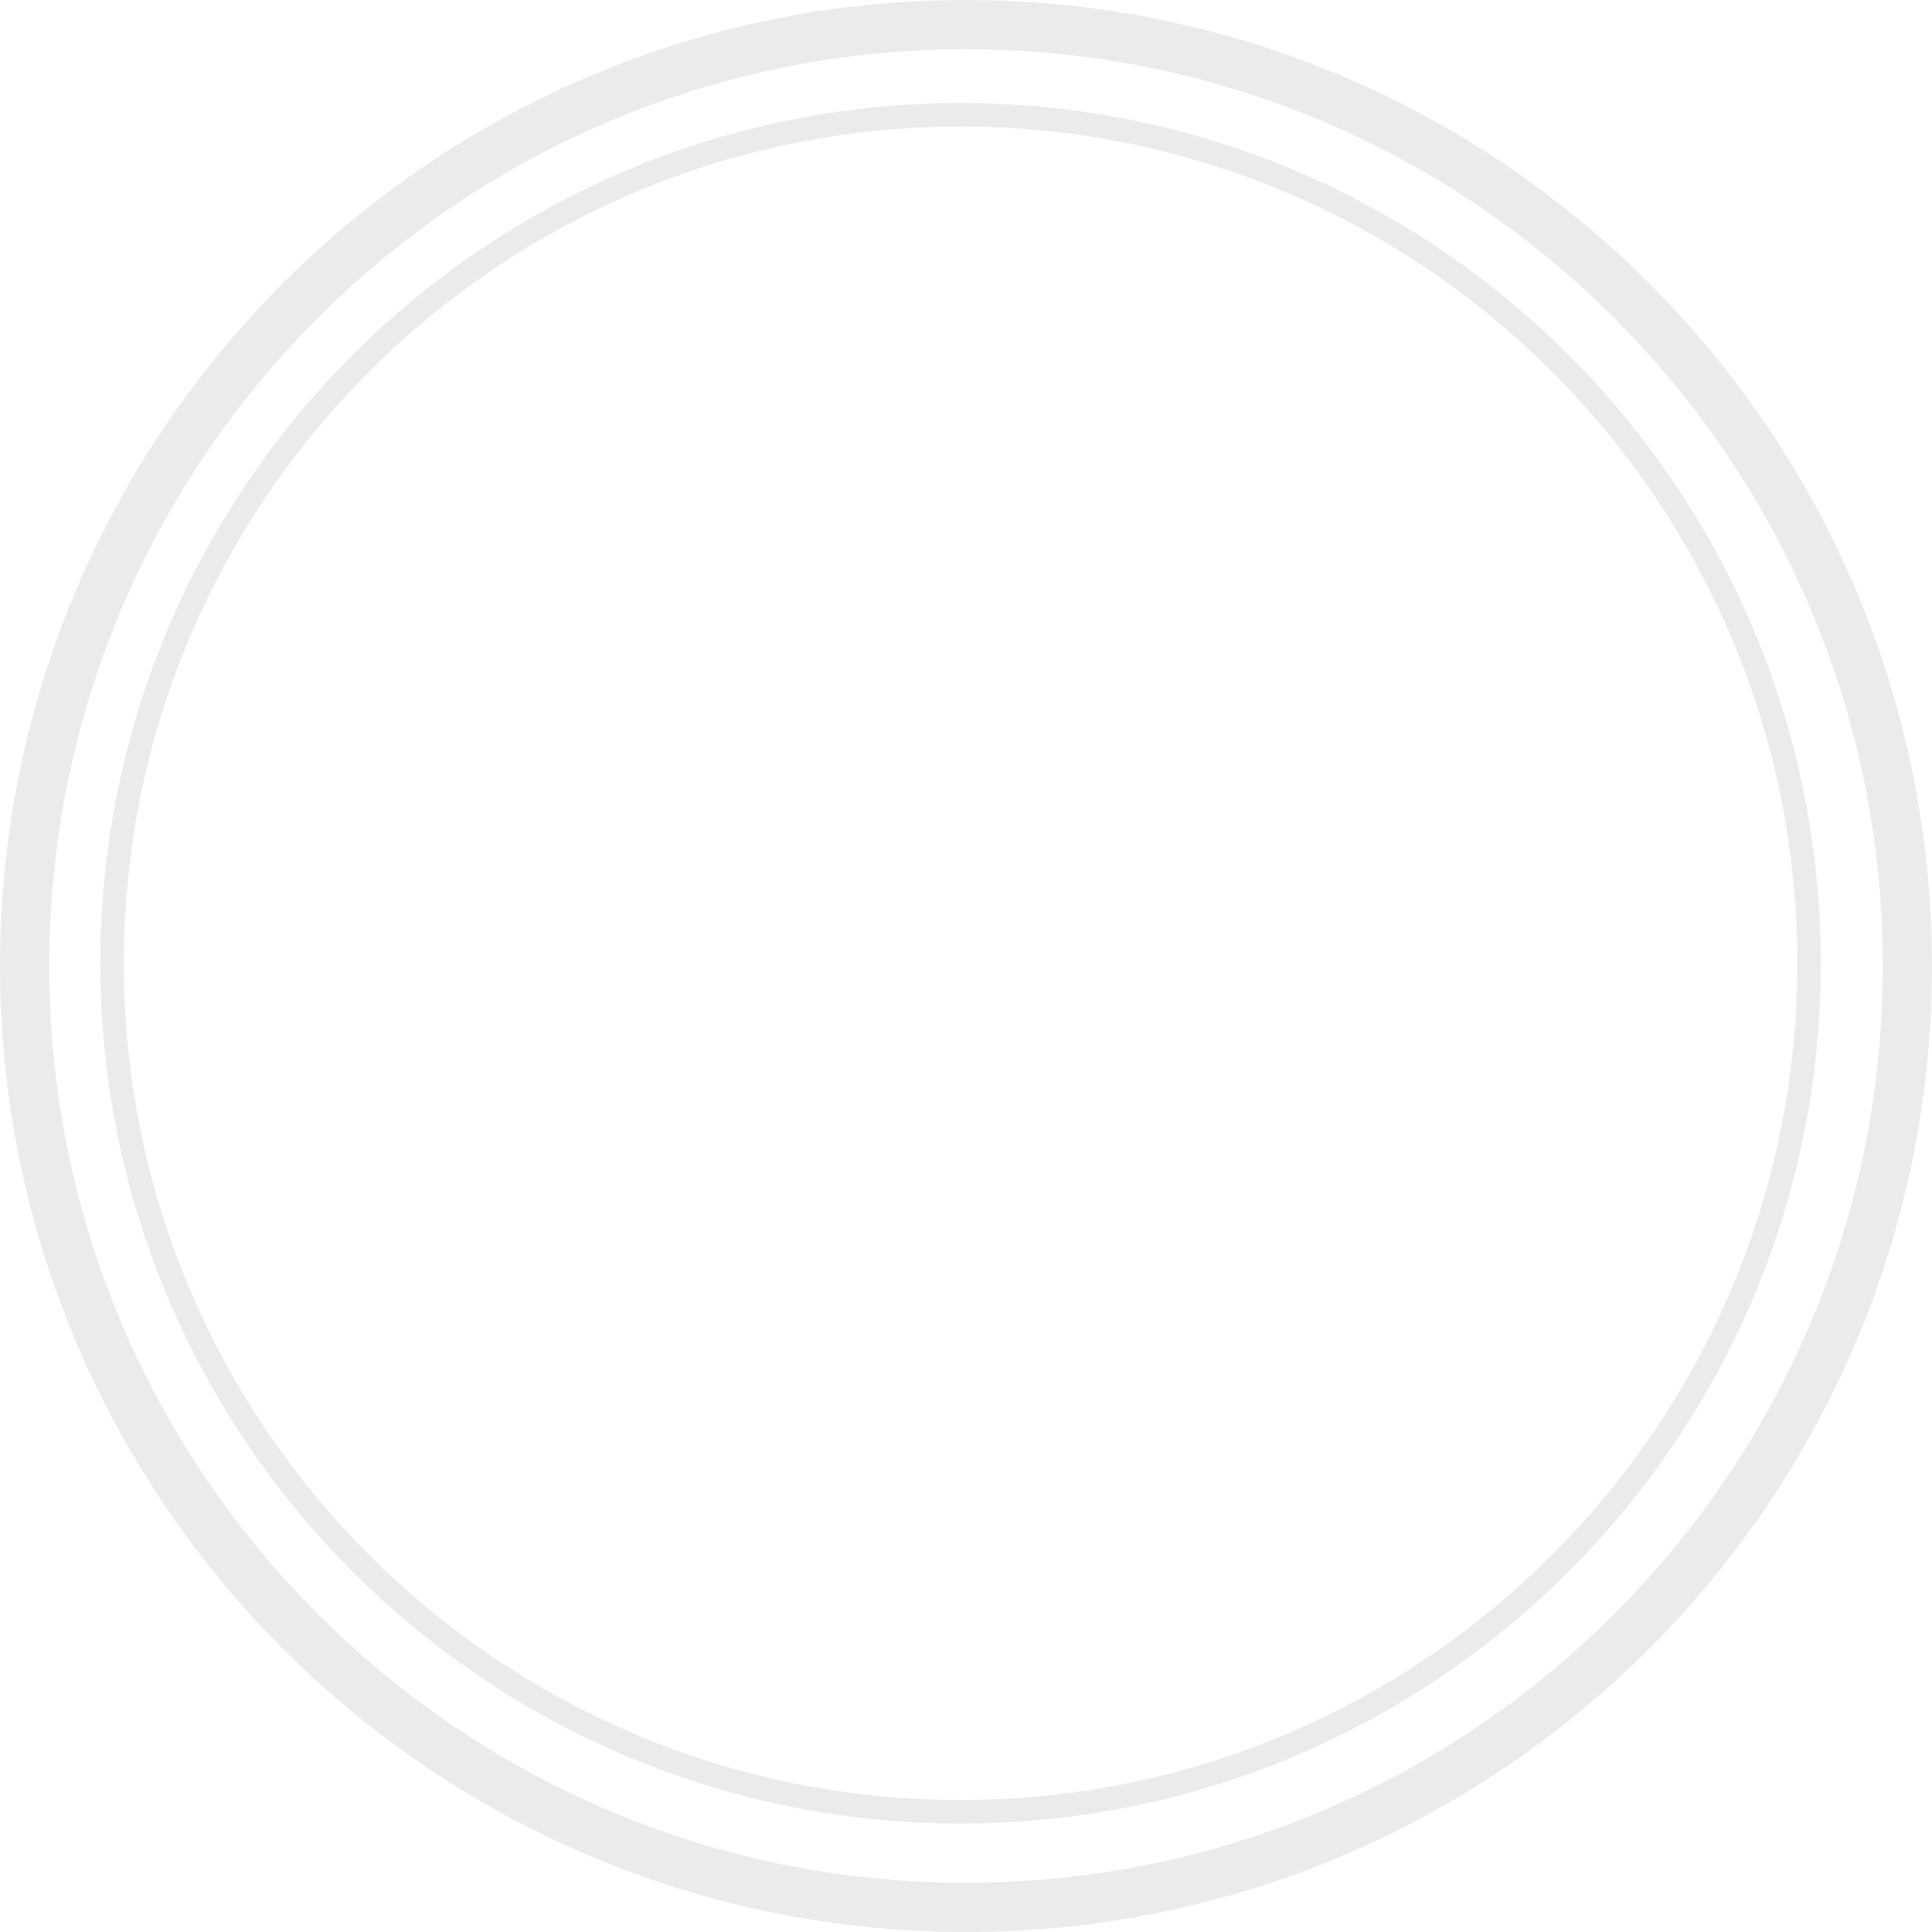 Ged Newton Design Artist www.gednewton.com www.baylakestudio.com